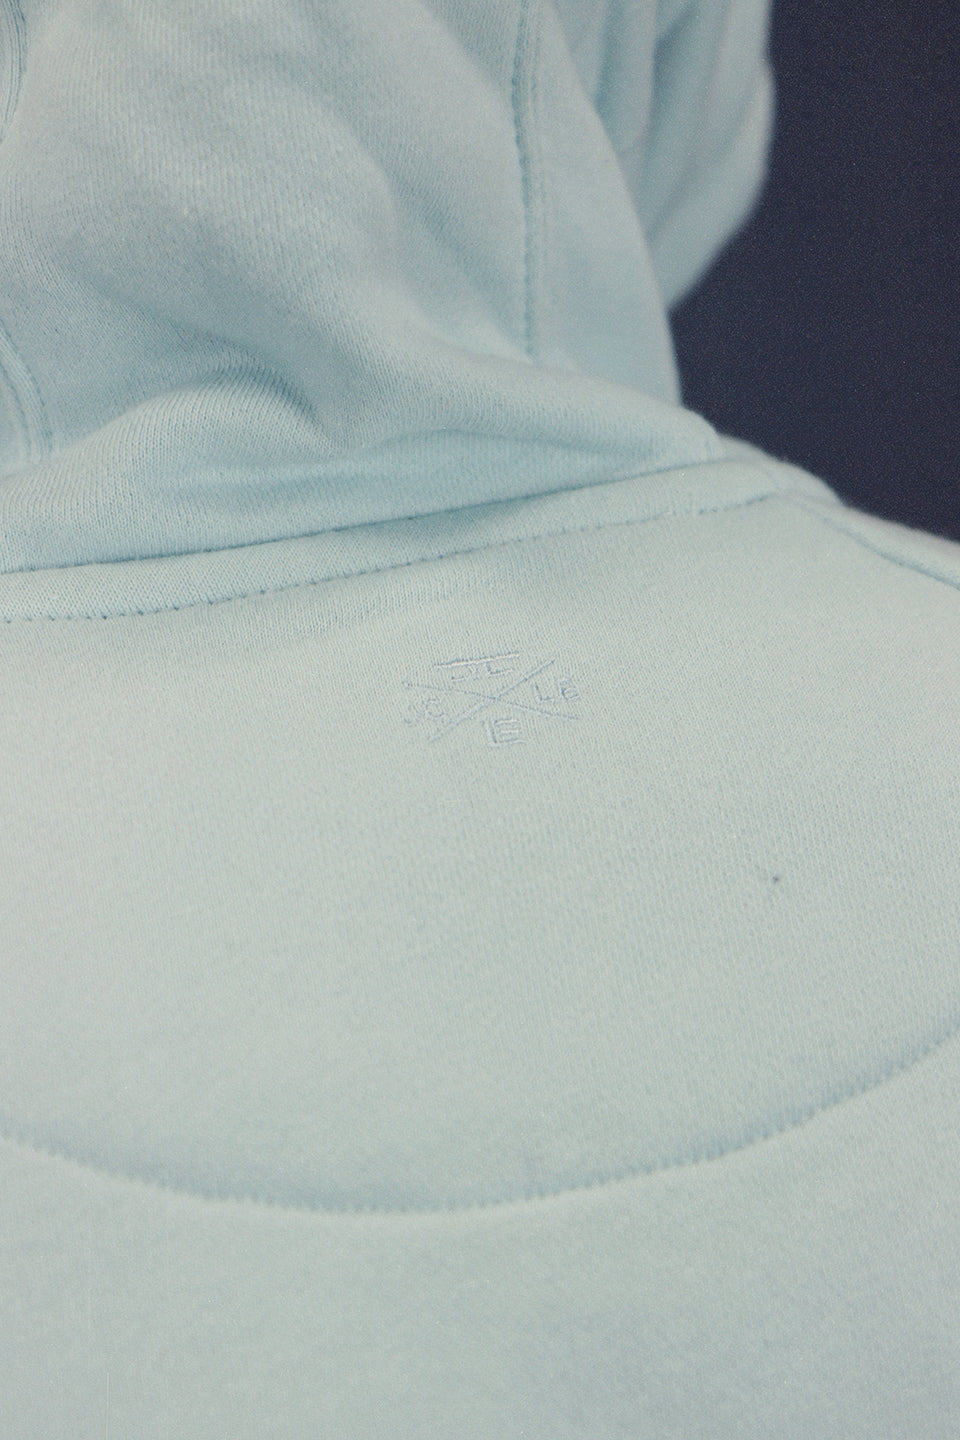 logo shot on the Men's Sky Foam Fleece Zip Up Hoodie Sweatshirt Jogger Top To Match Sneakers